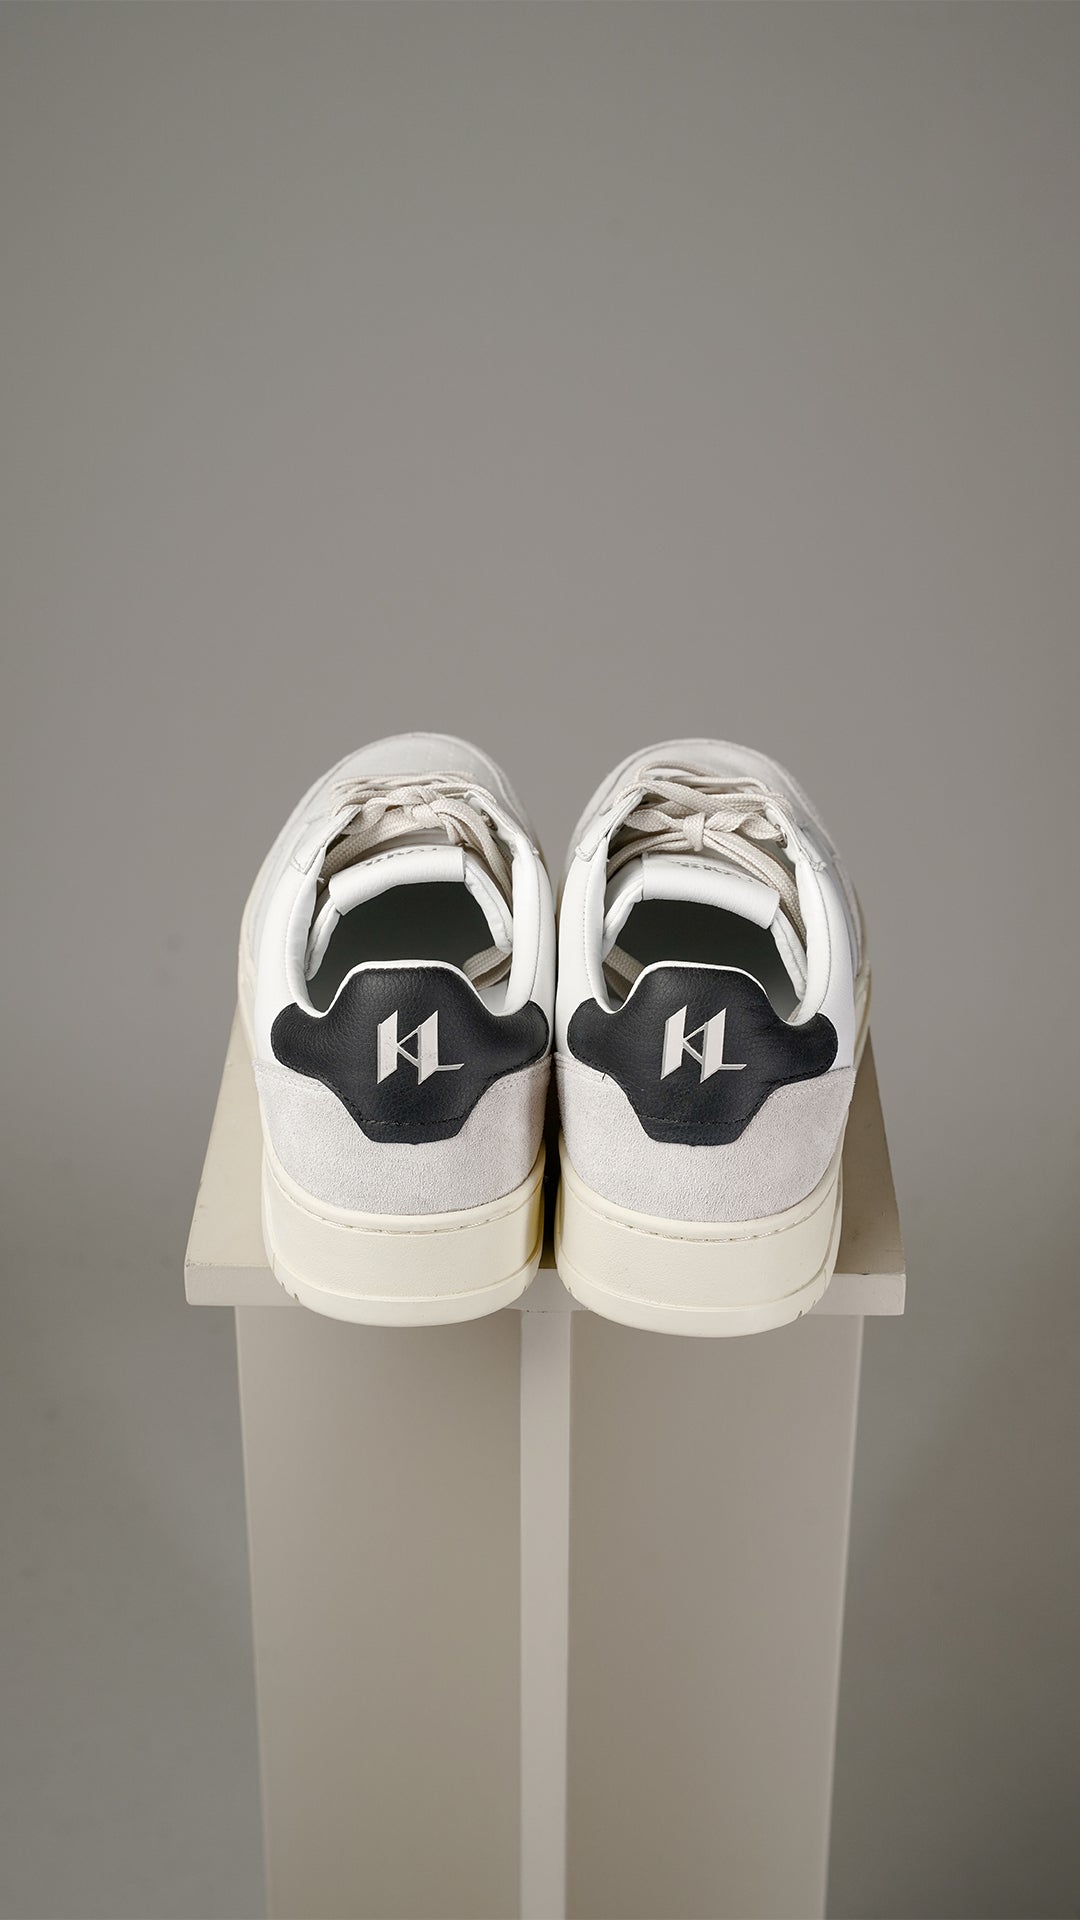 Karl Lagerfeld hvide sneakers med sort detaljer